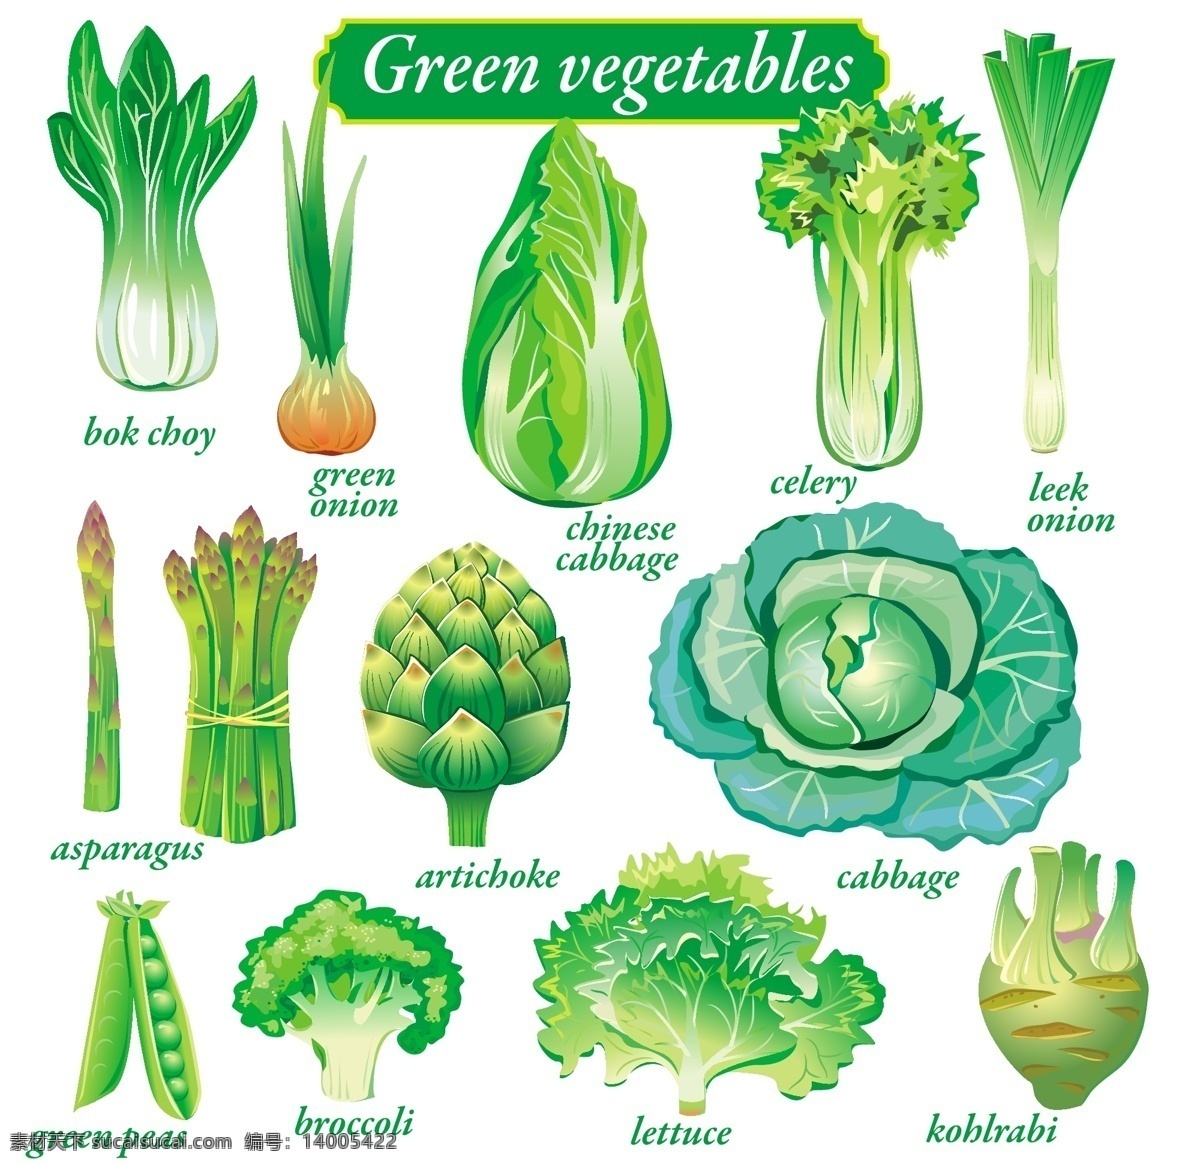 水果 蔬菜 矢量 肉类 水果蔬菜 黑色和白色 背景 可爱 剪影 图标 水果和蔬菜 水果蔬菜矢量 其他矢量图